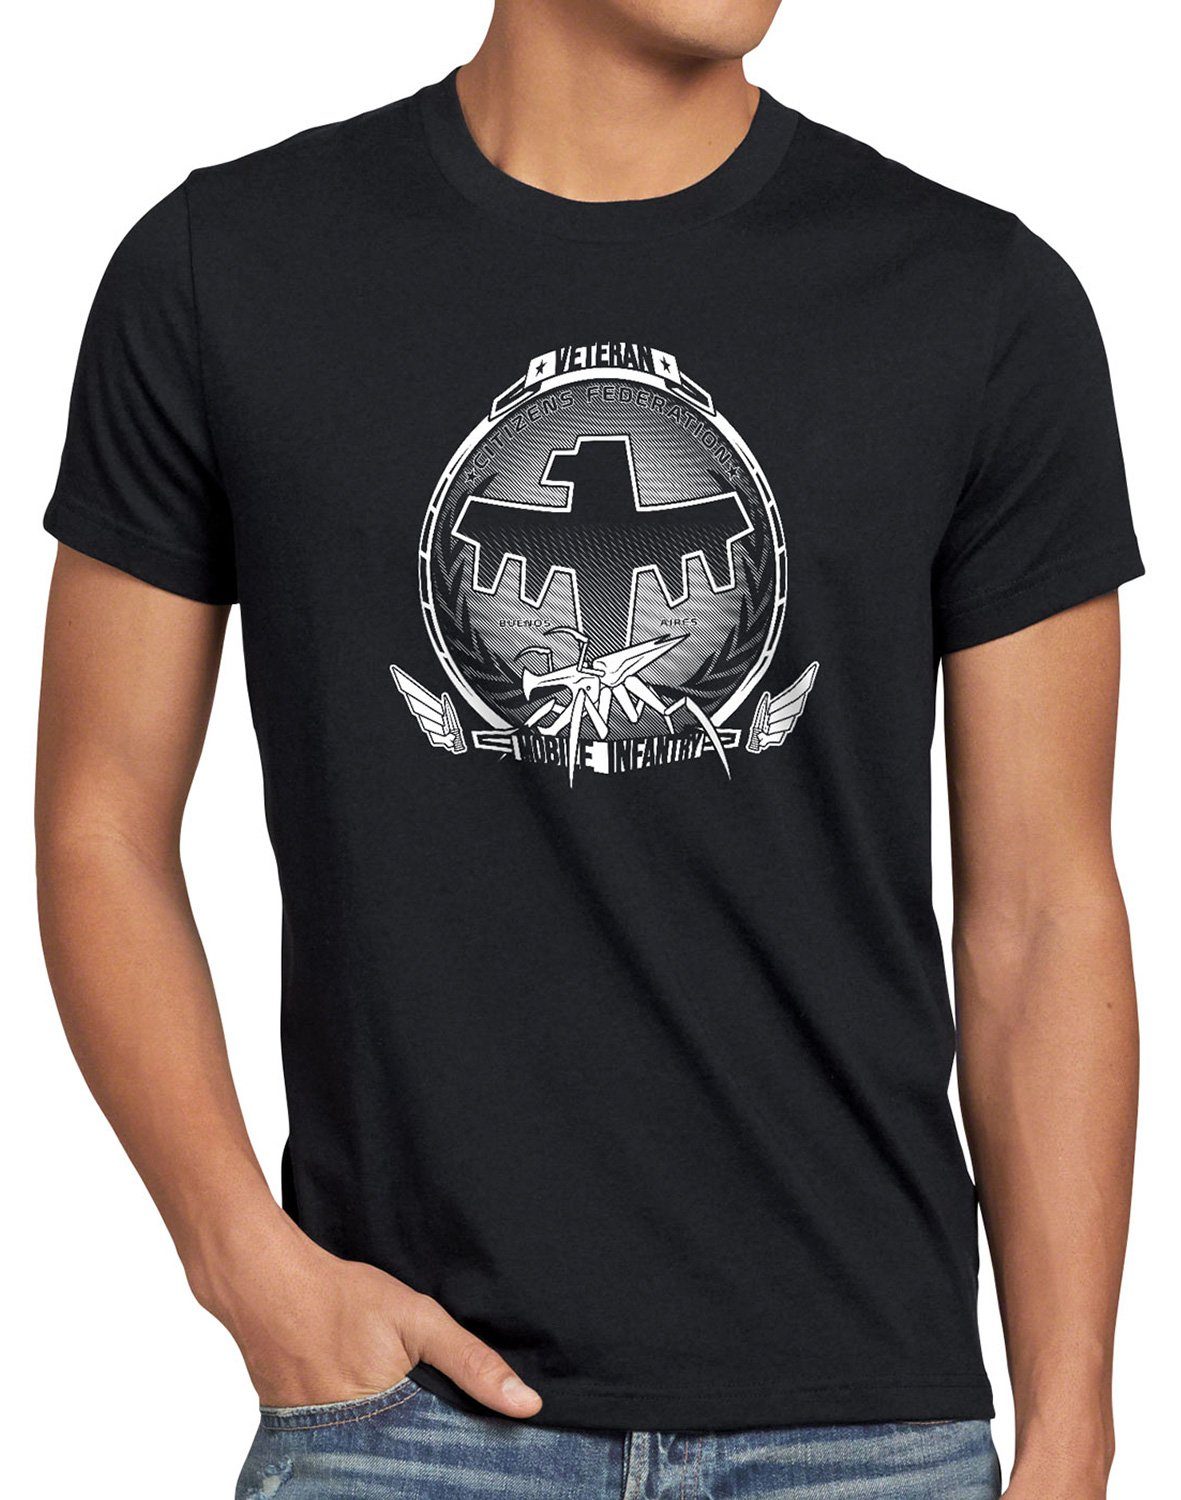 weltraum infanterie Veteran Infantry T-Shirt style3 starship Print-Shirt Herren Mobile